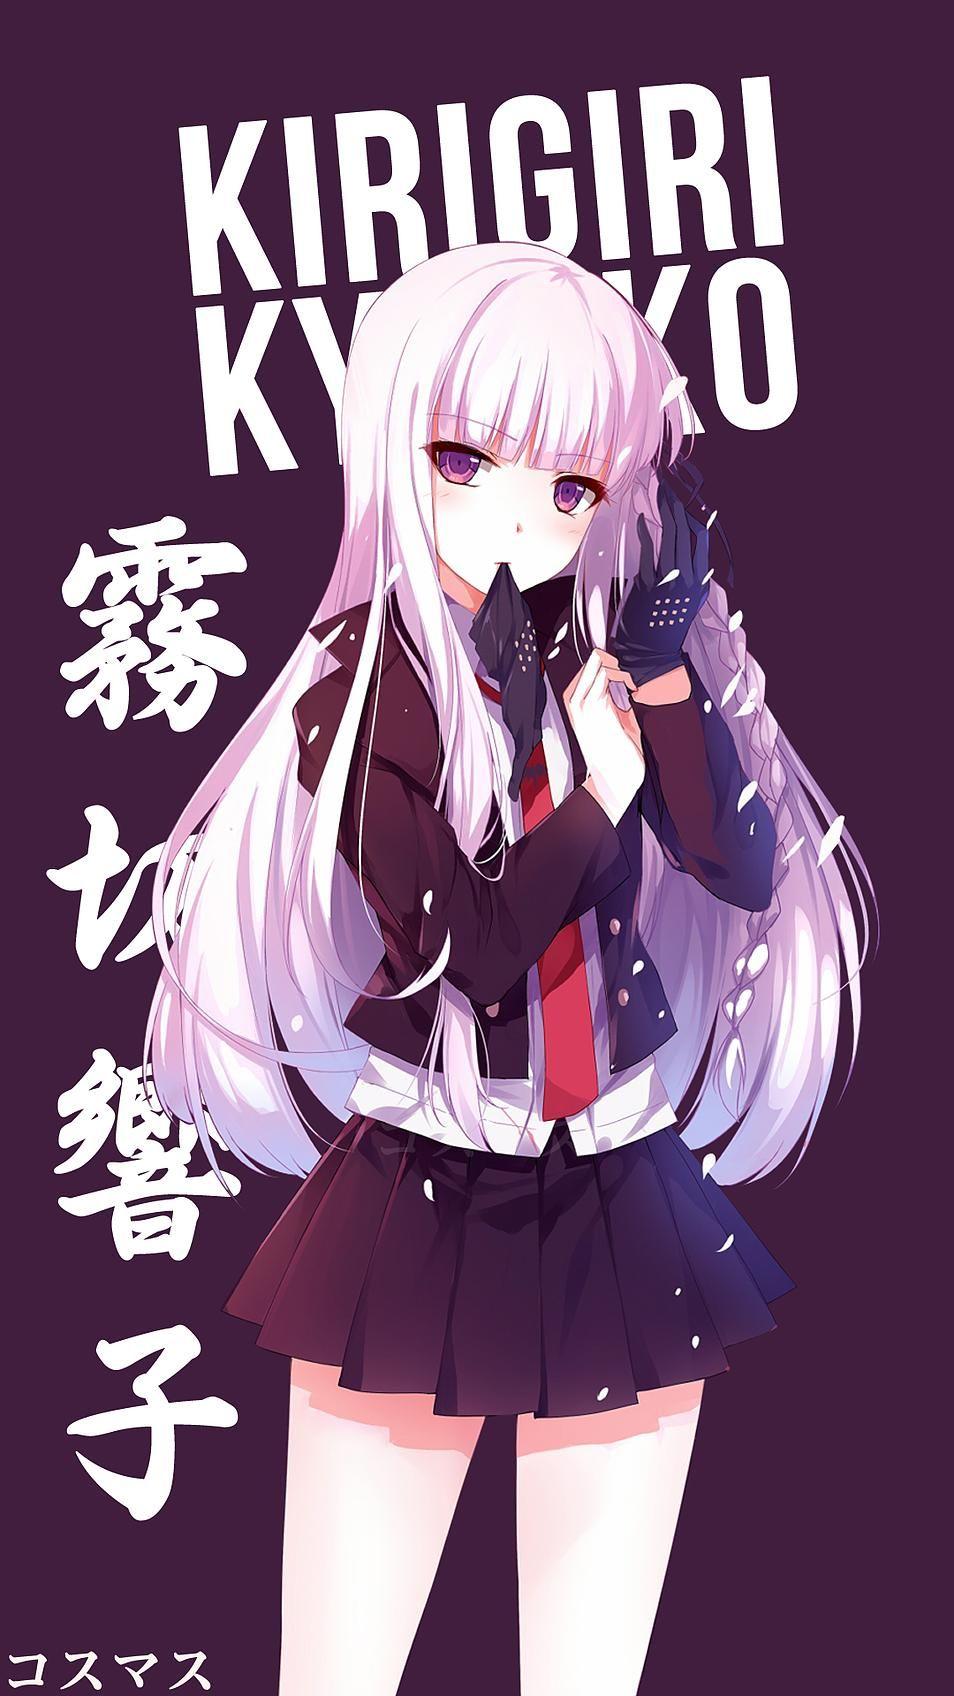 Kyoko Kirigiri. Anime, Wallpaper and Manga